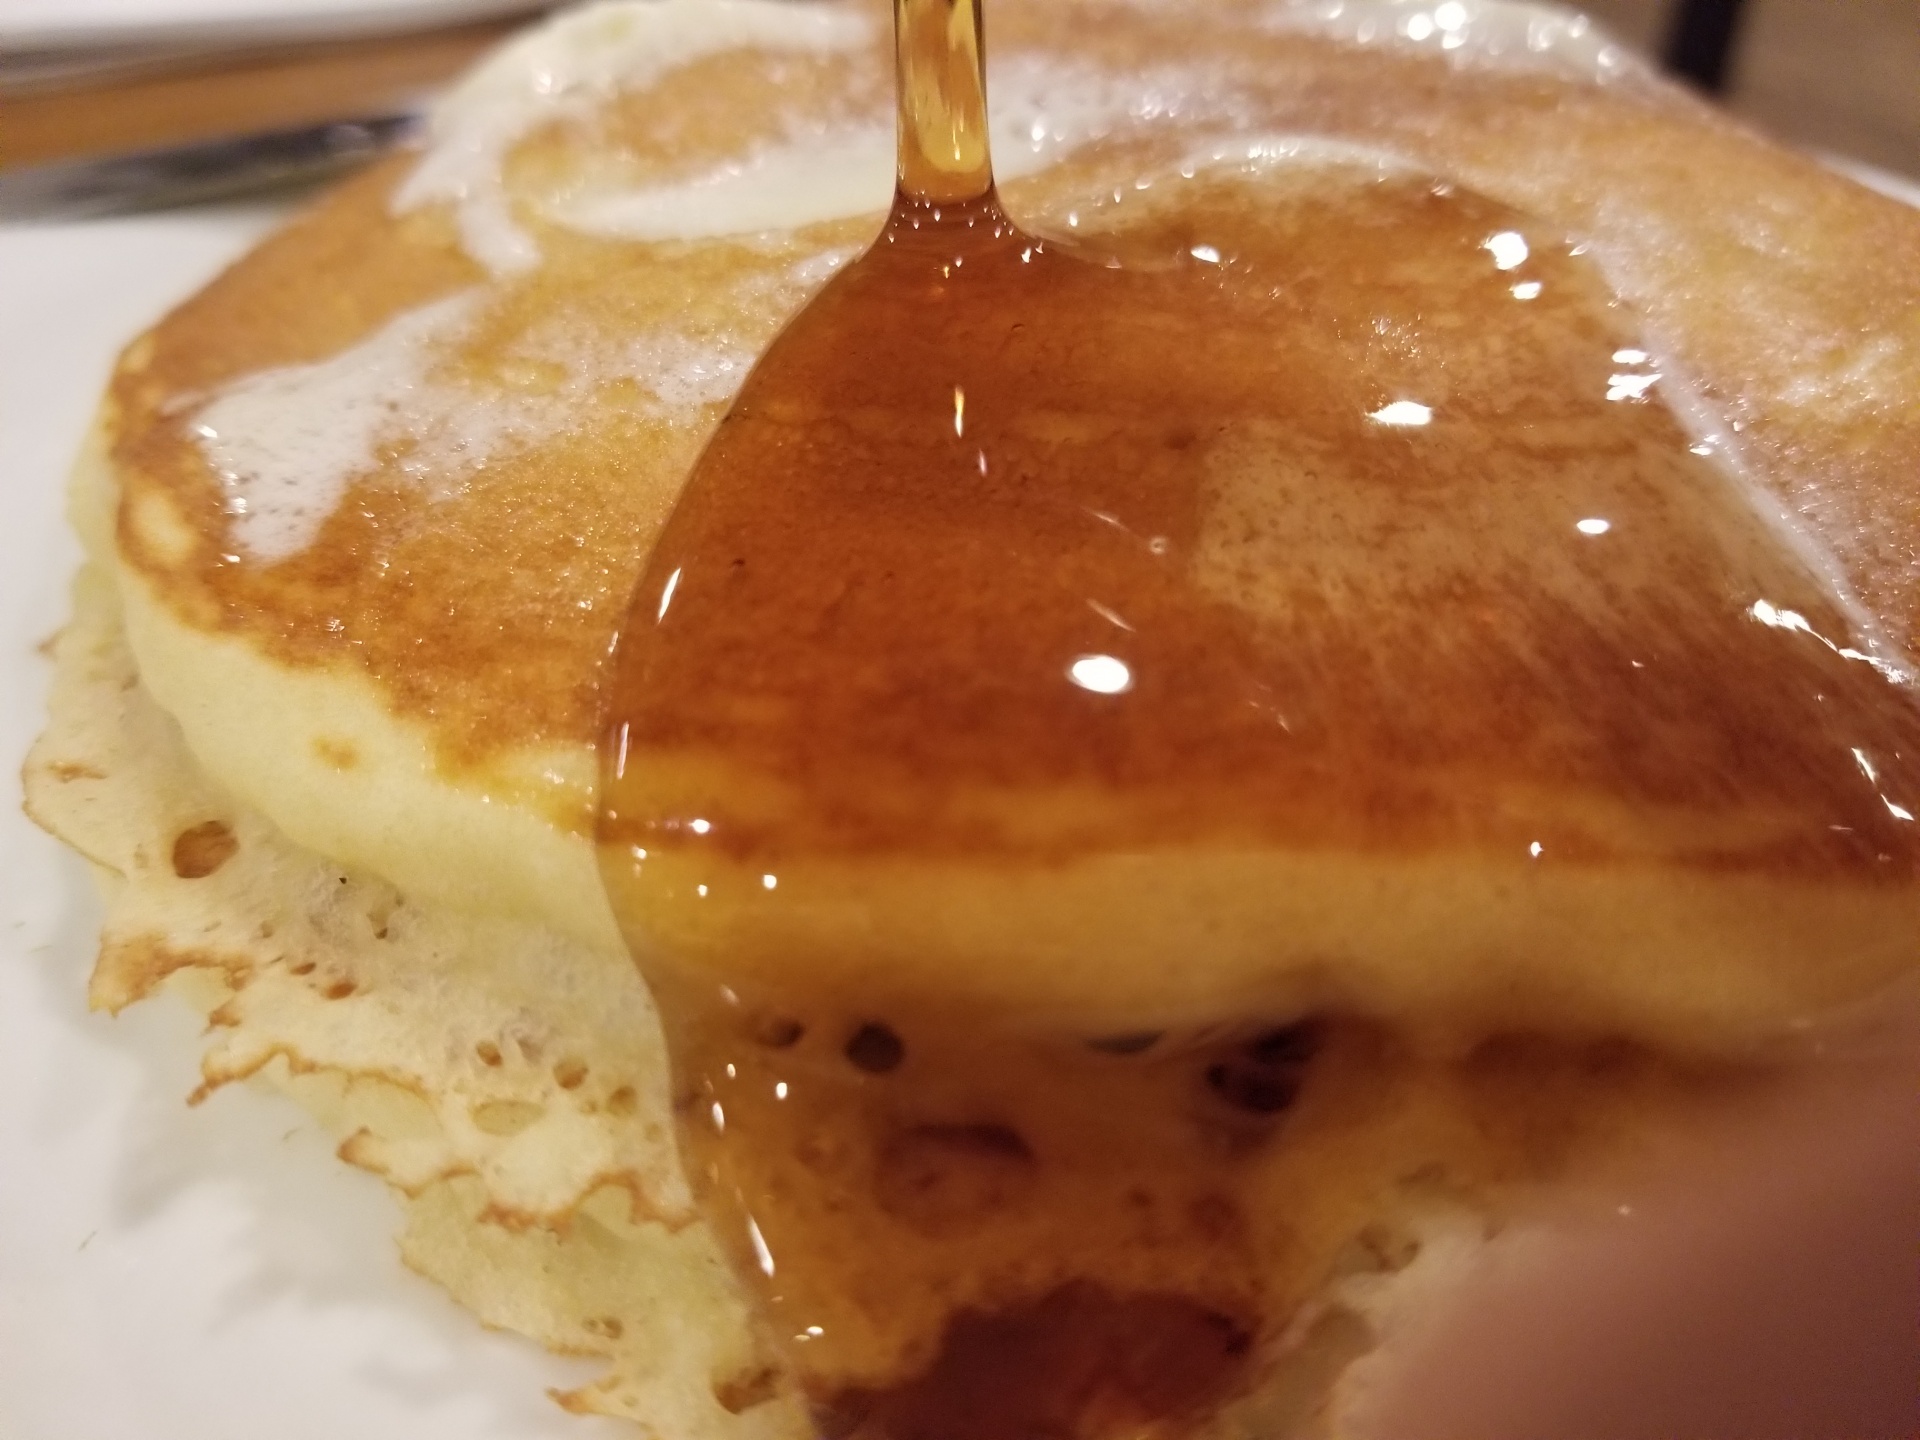 Orange Pancake Syrup